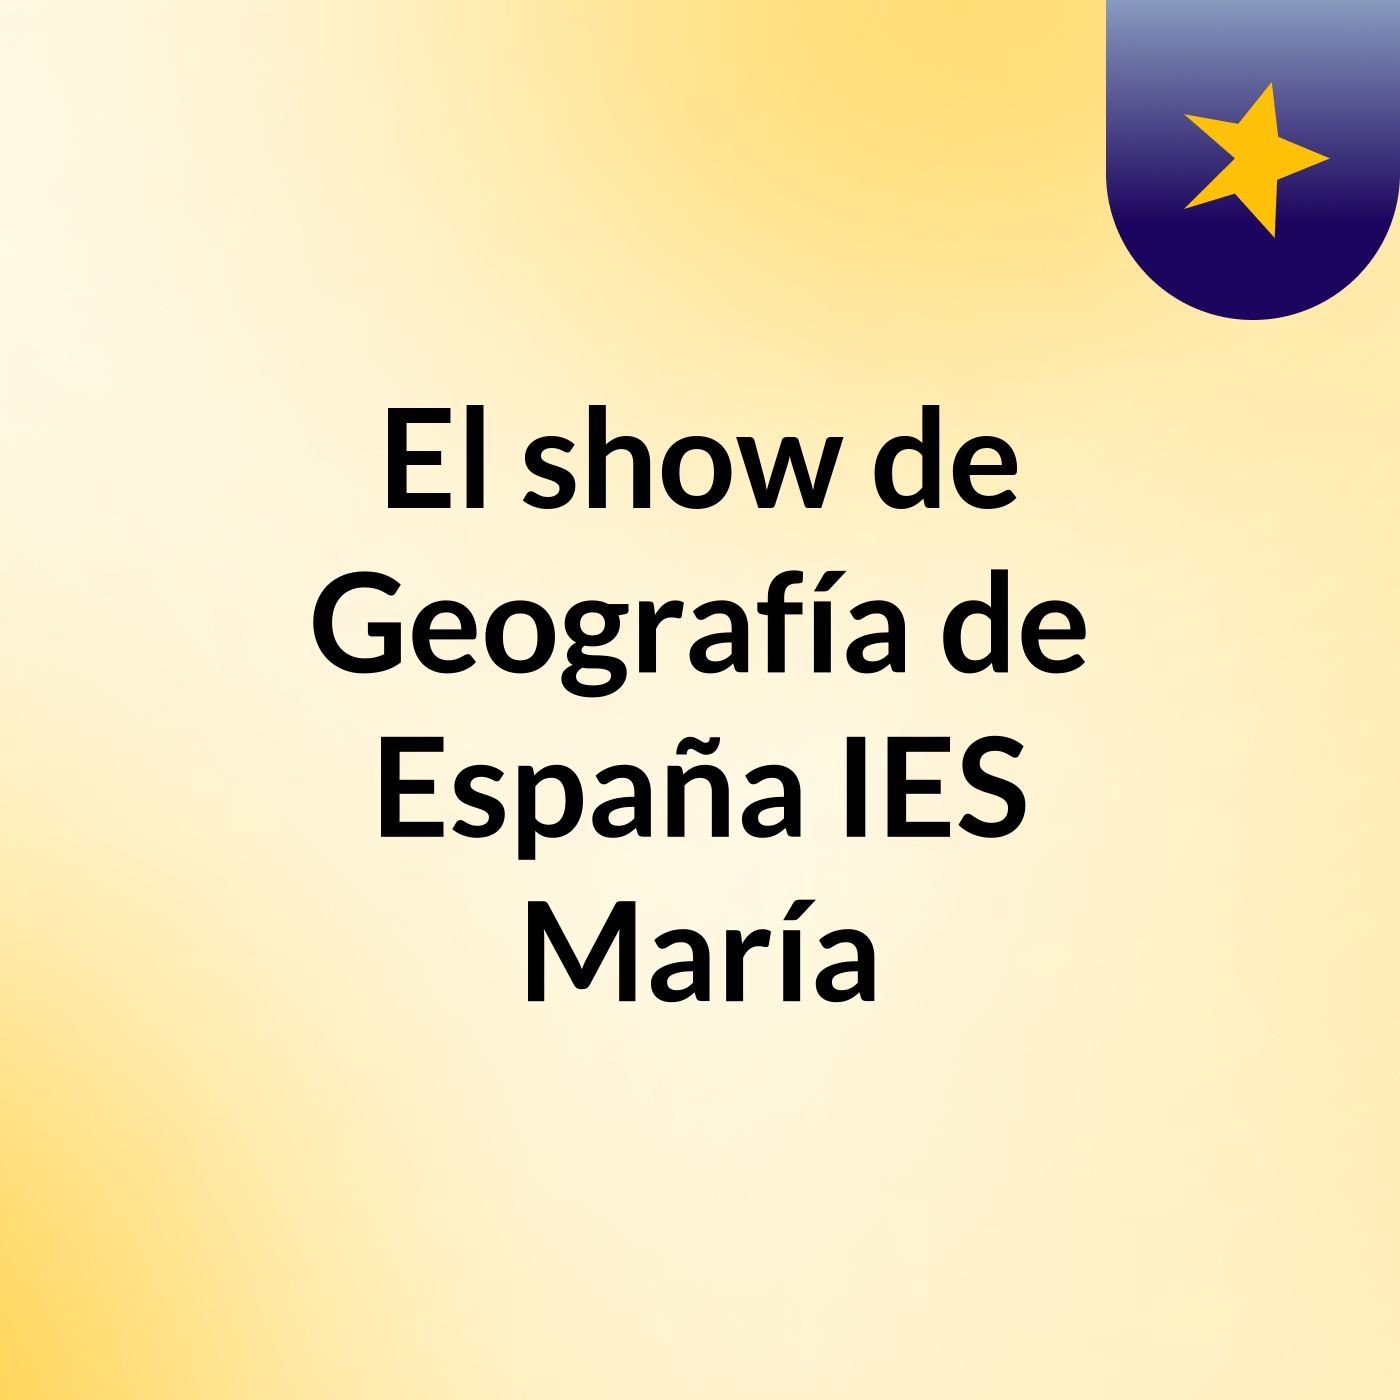 El show de Geografía de España IES María